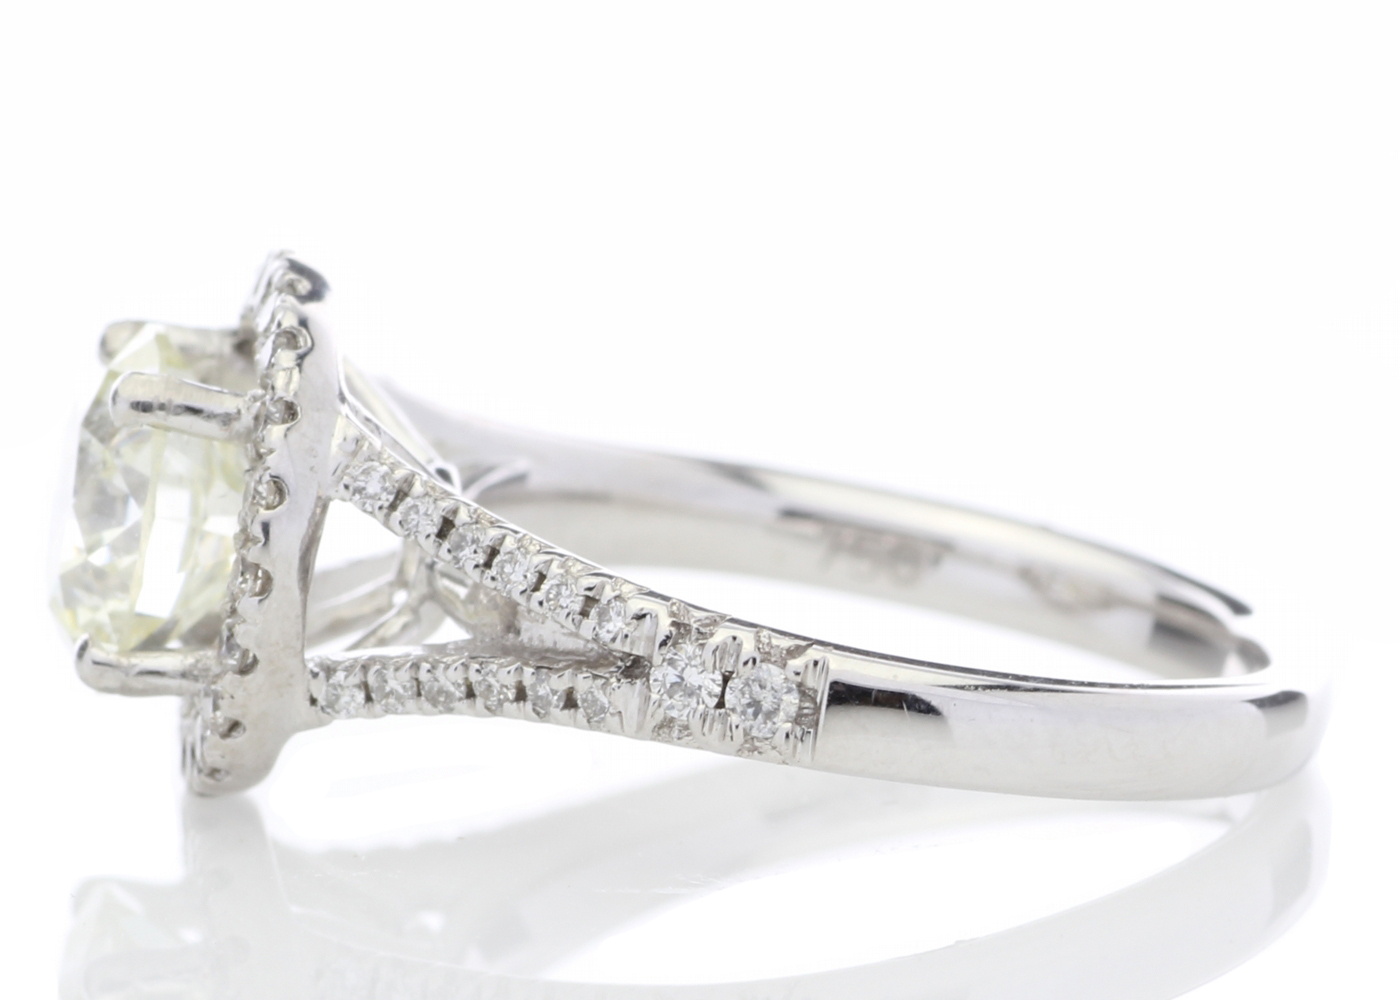 18k White Gold Halo Set Diamond Ring 1.98 Carats - Image 3 of 5